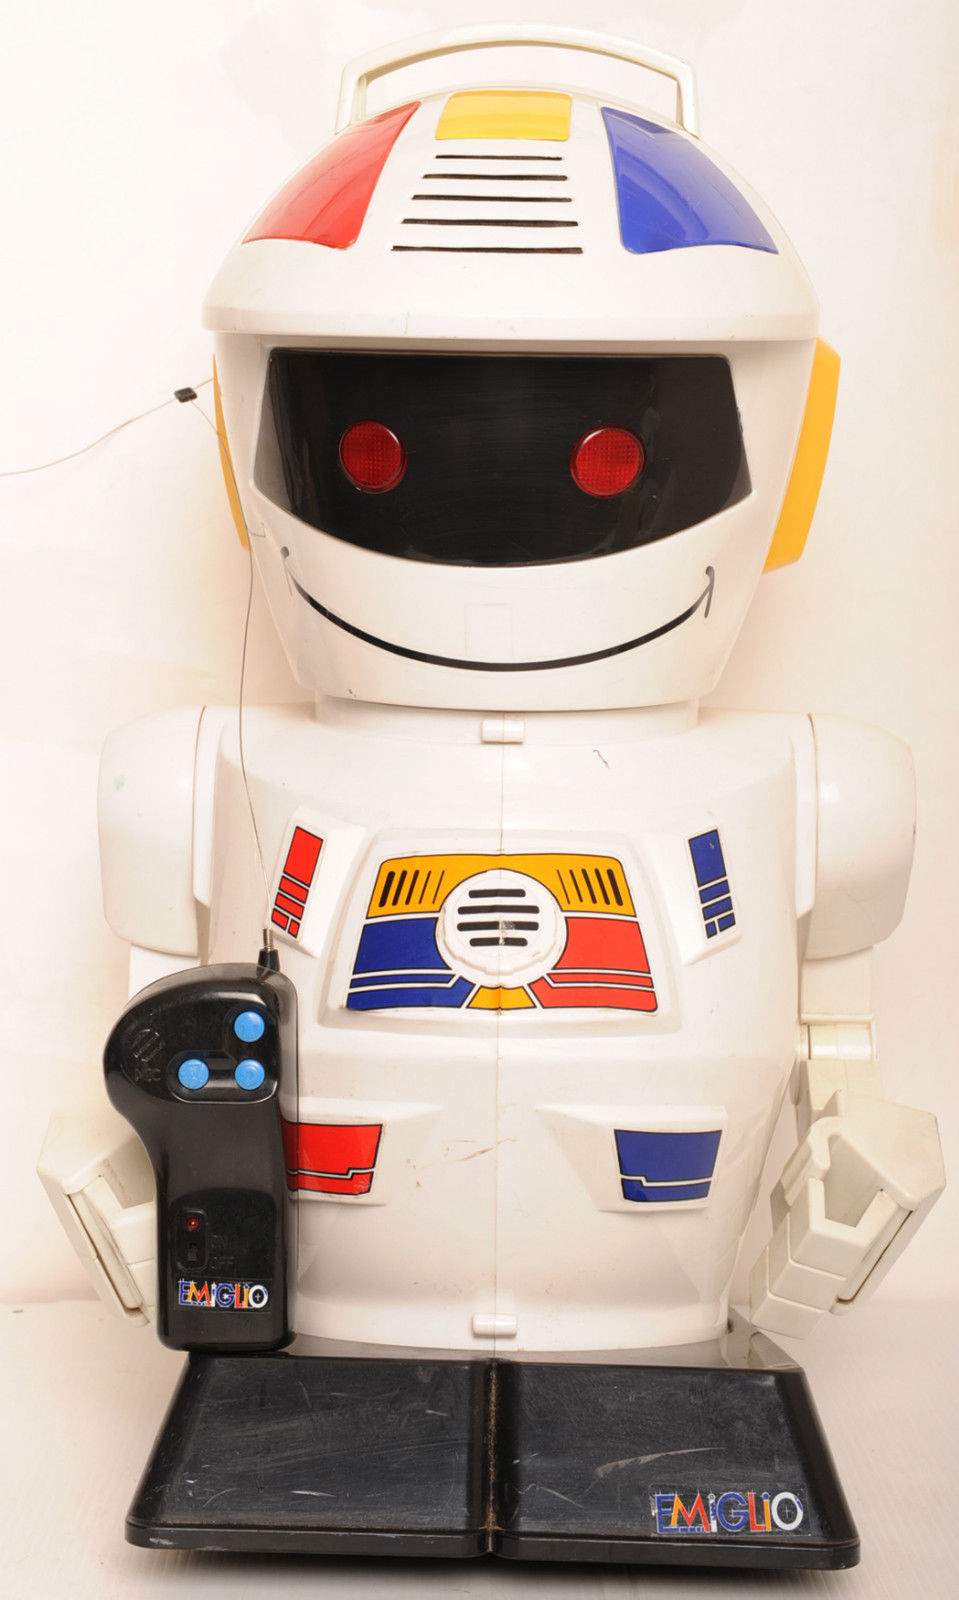 E.M.I.G.L.I.O Robot by Giochi Preziosi - The Old Robot's Web Site